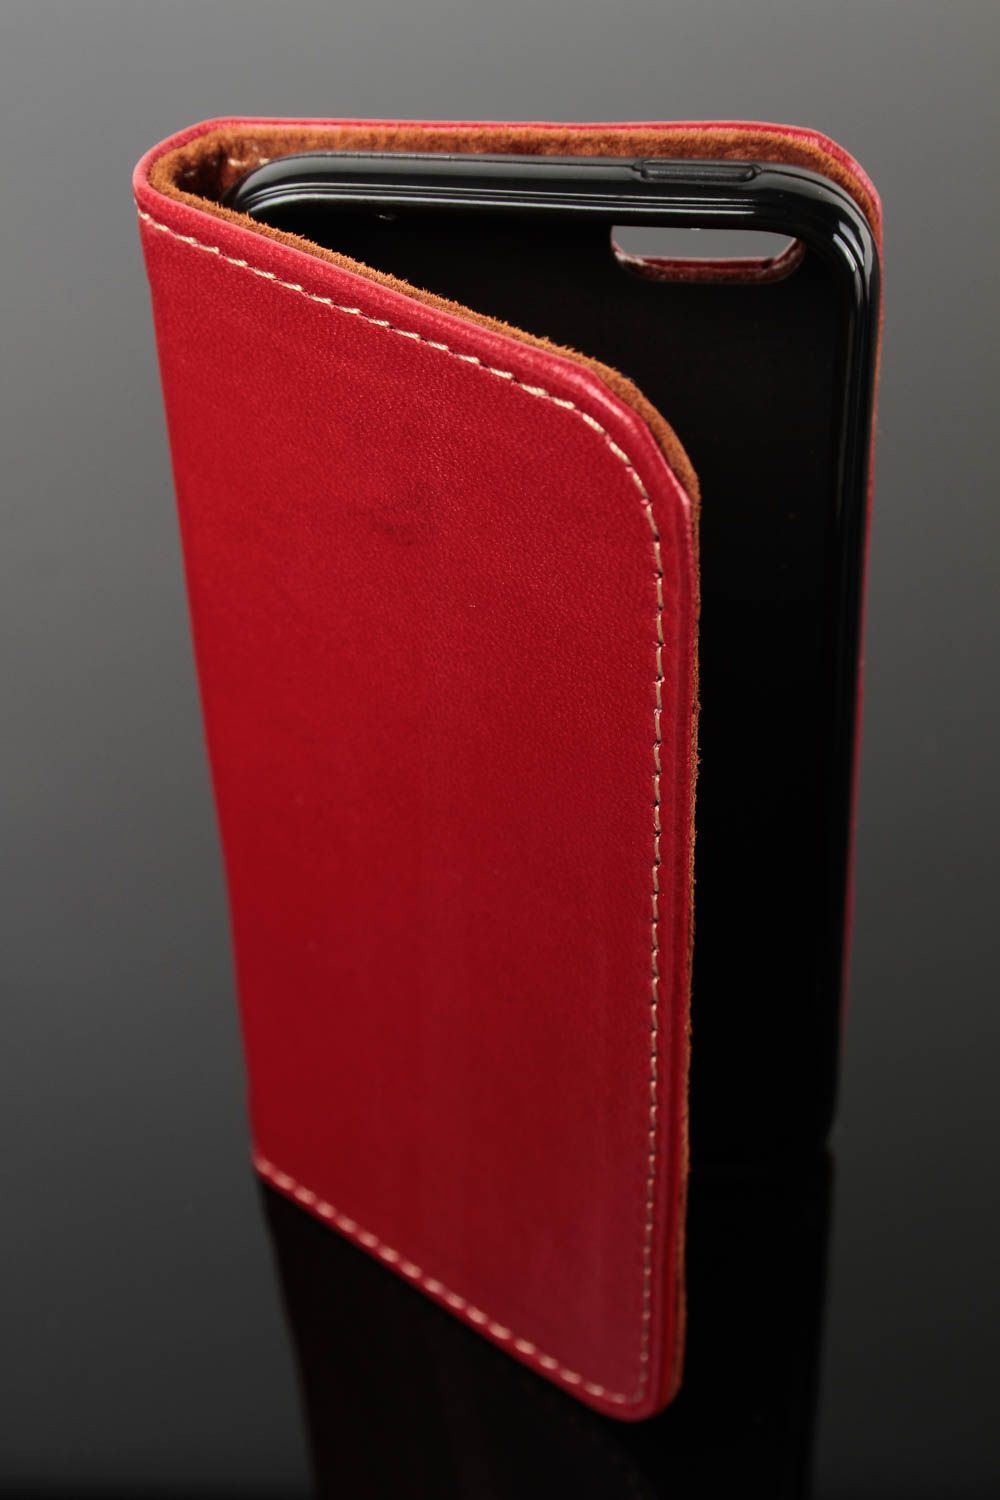 Чехол на телефон хэнд мэйд аксессуар для смартфона кожаный чехол красный фото 2